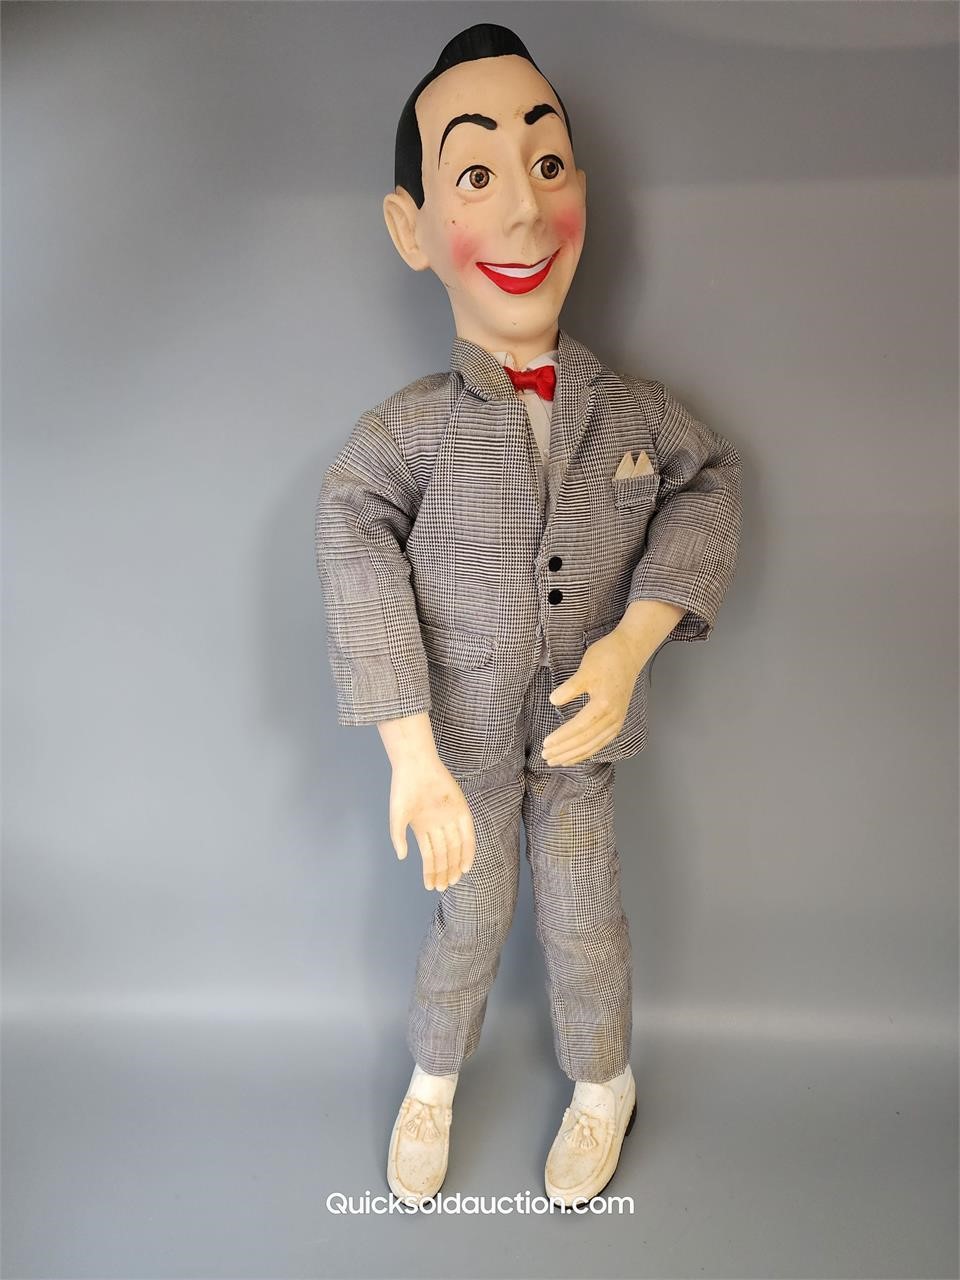 Vintage 1987 Pee Wee Herman Talking Doll 17" L.